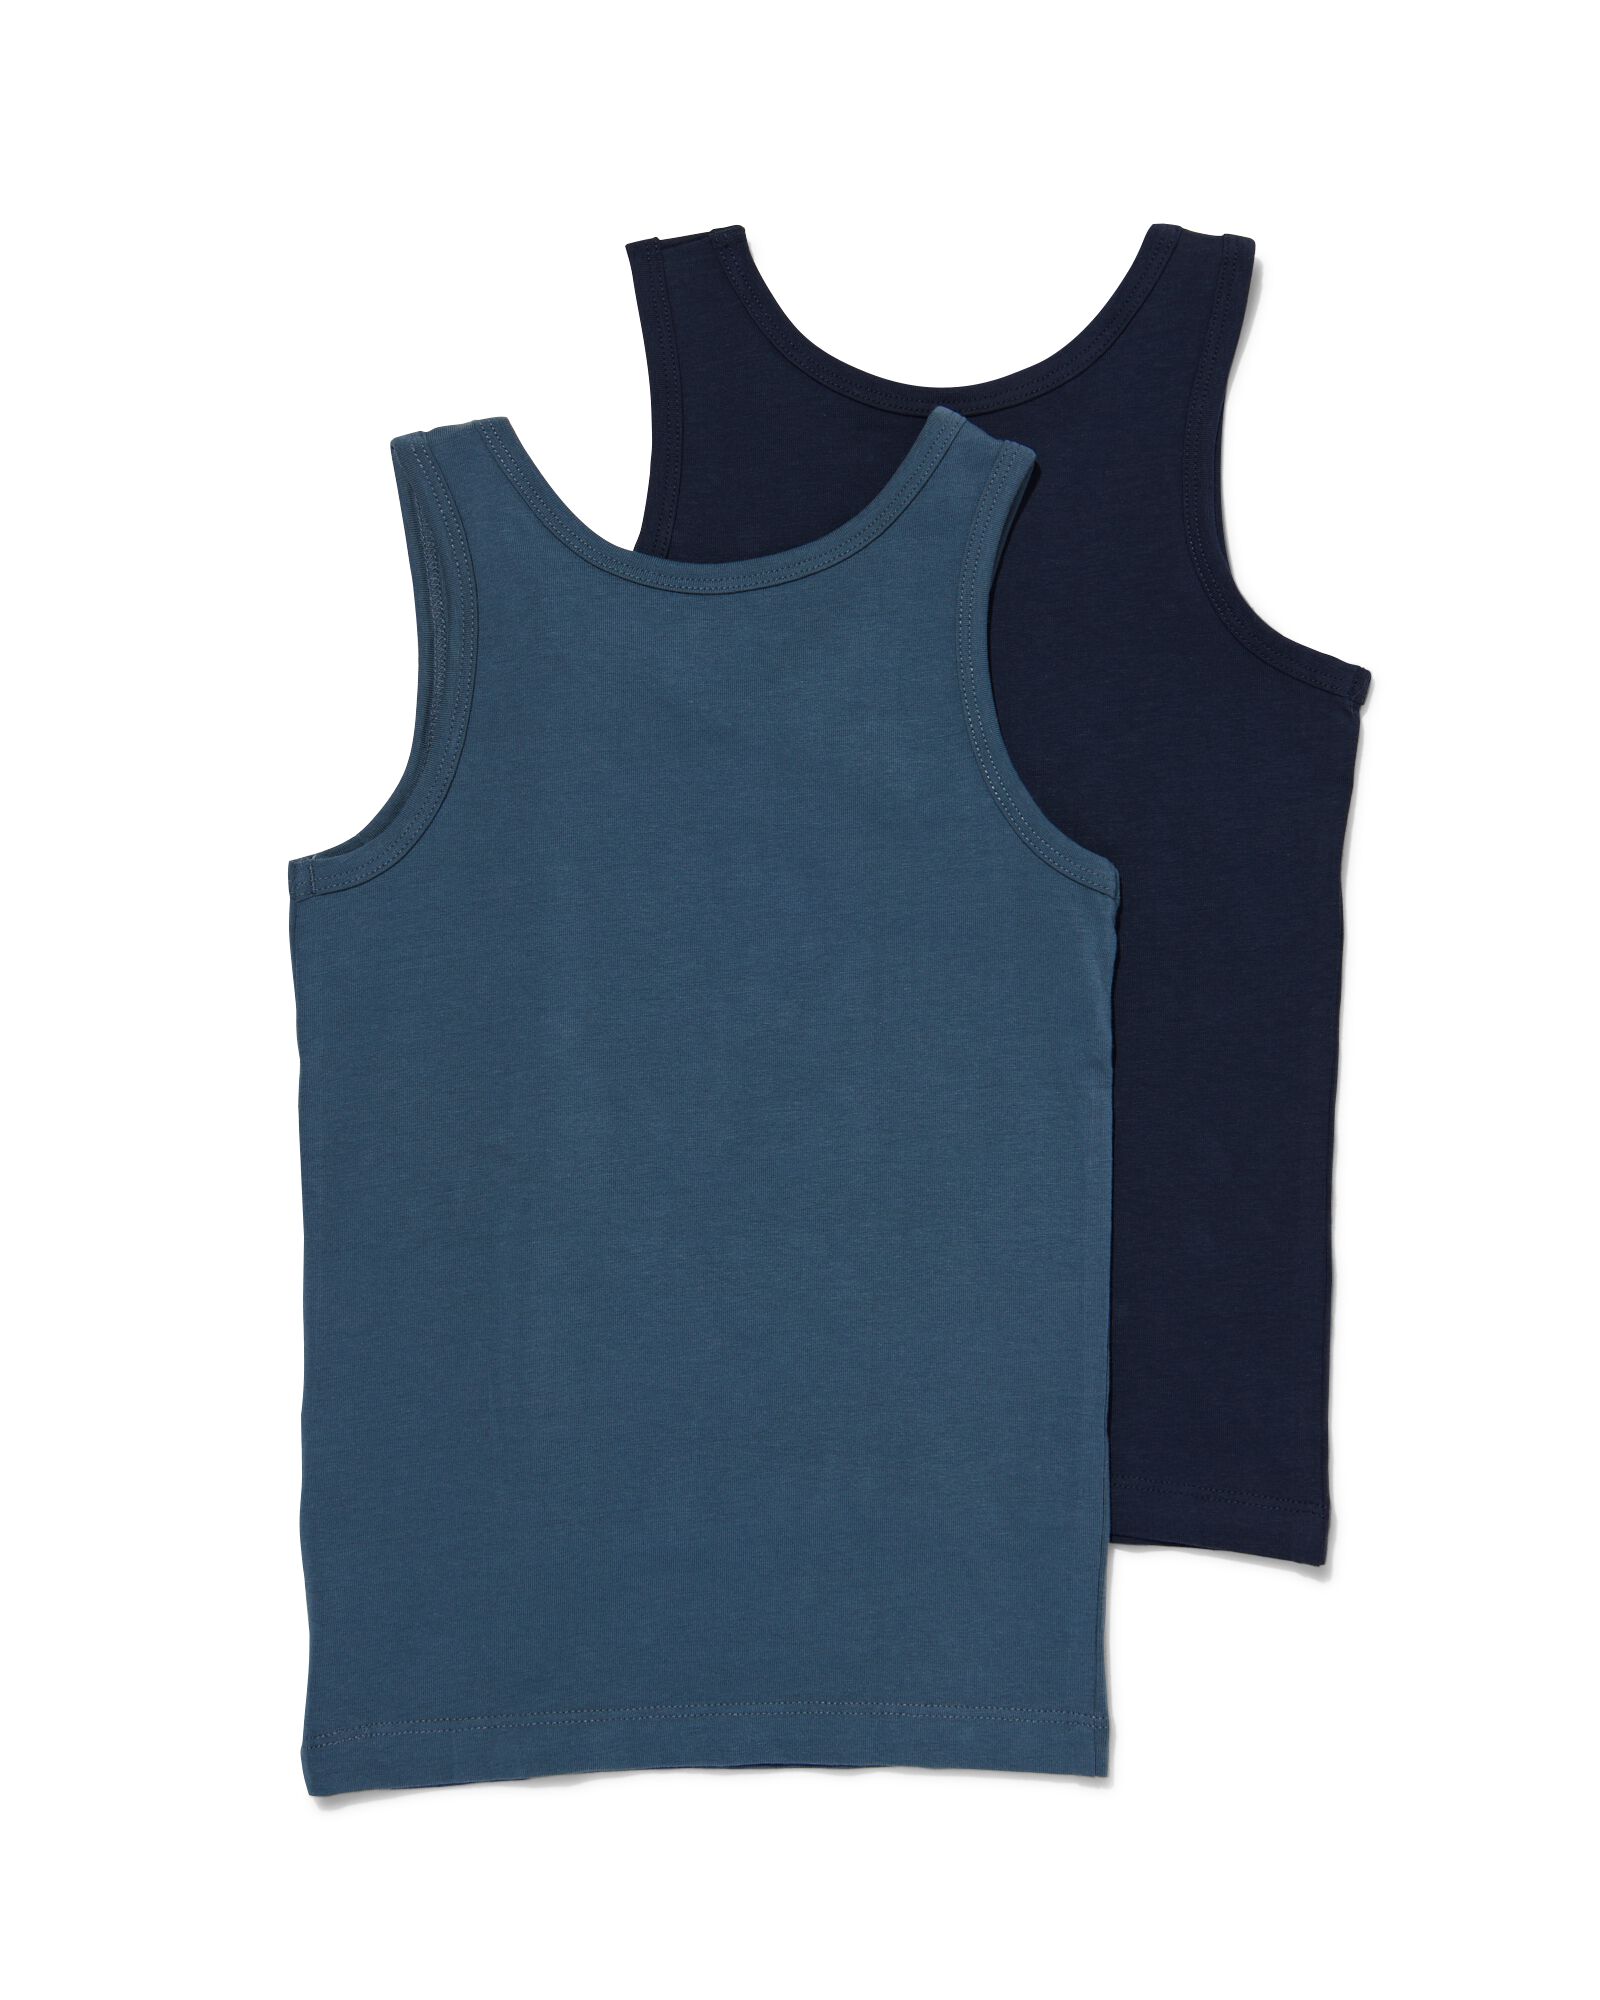 kinderhemden - 2 stuks donkerblauw 146/152 - 19280726 - HEMA